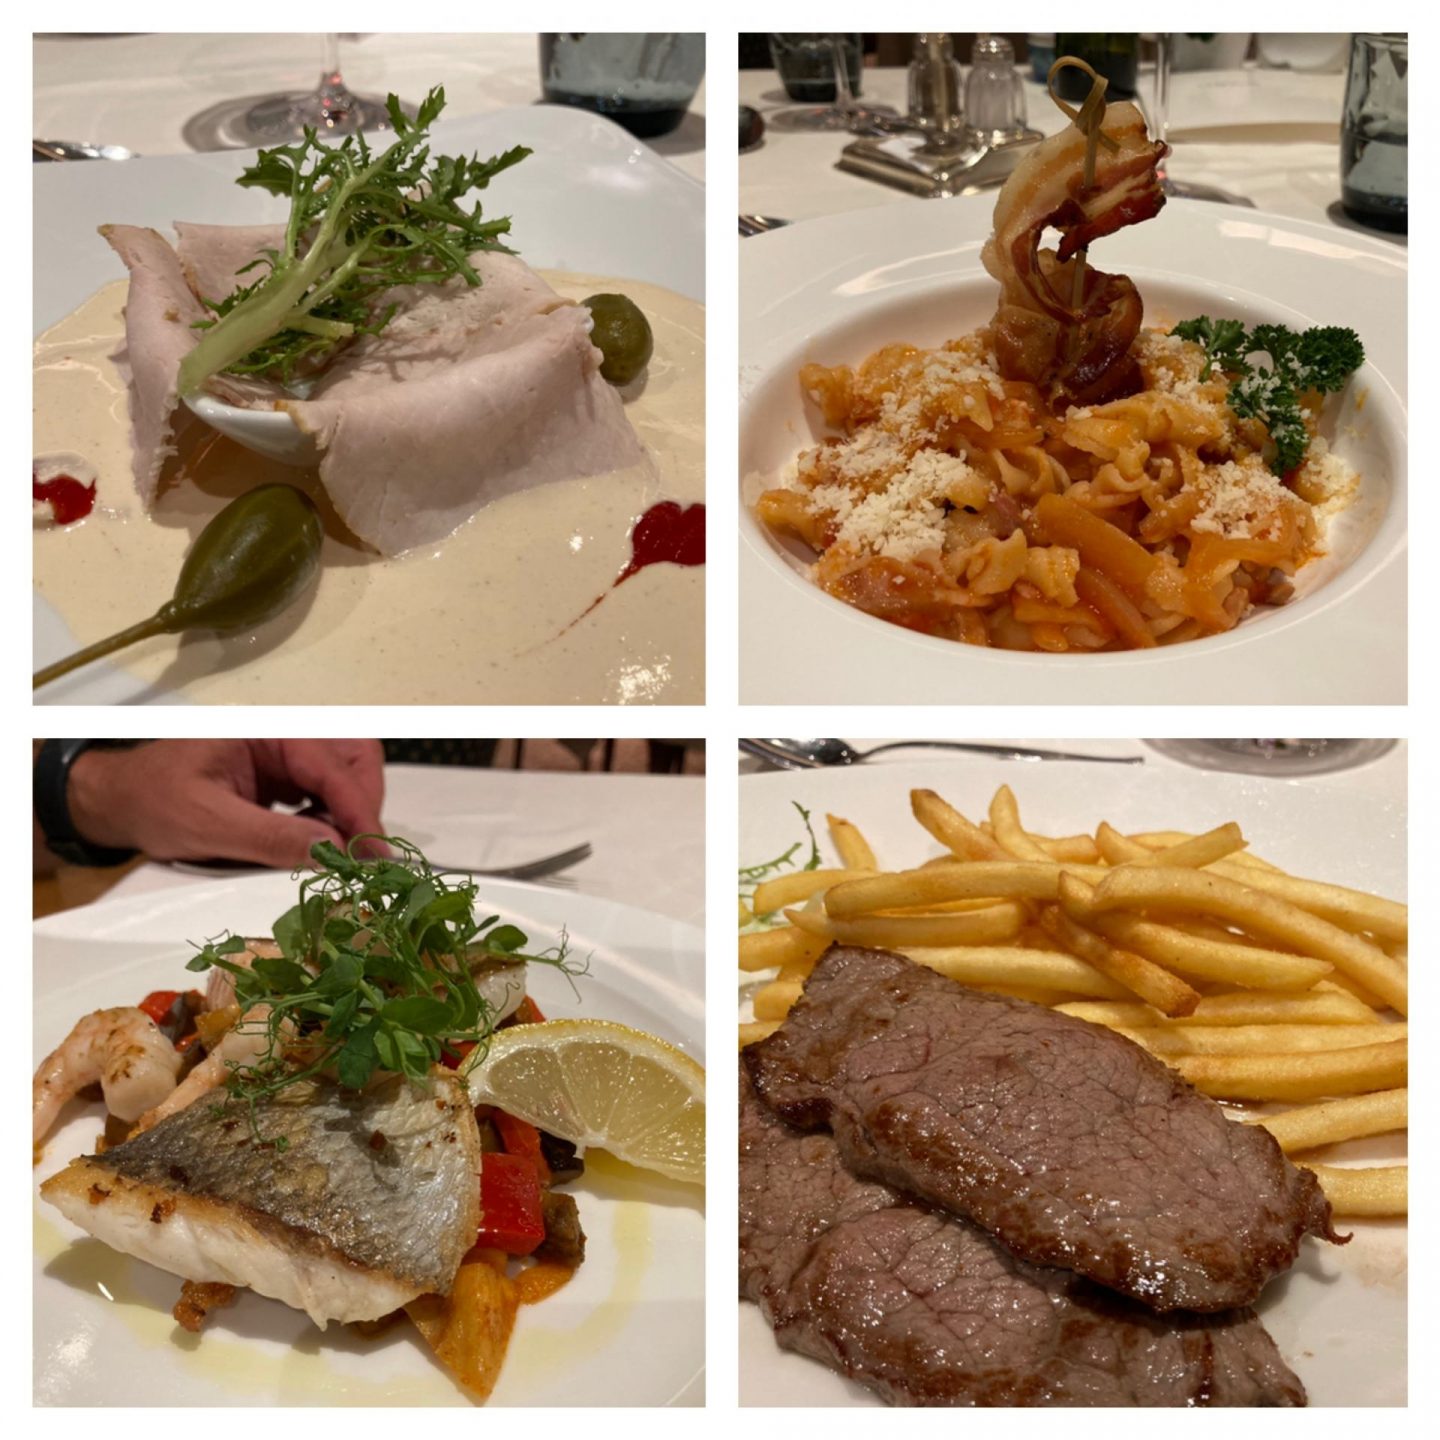 Erfahrung Bewertung Kritik Hotel Armin Wolkenstein Vitello Tonnato Fusili Amatriciana Fischteller Steak vom Grill Foodblog Sternestulle